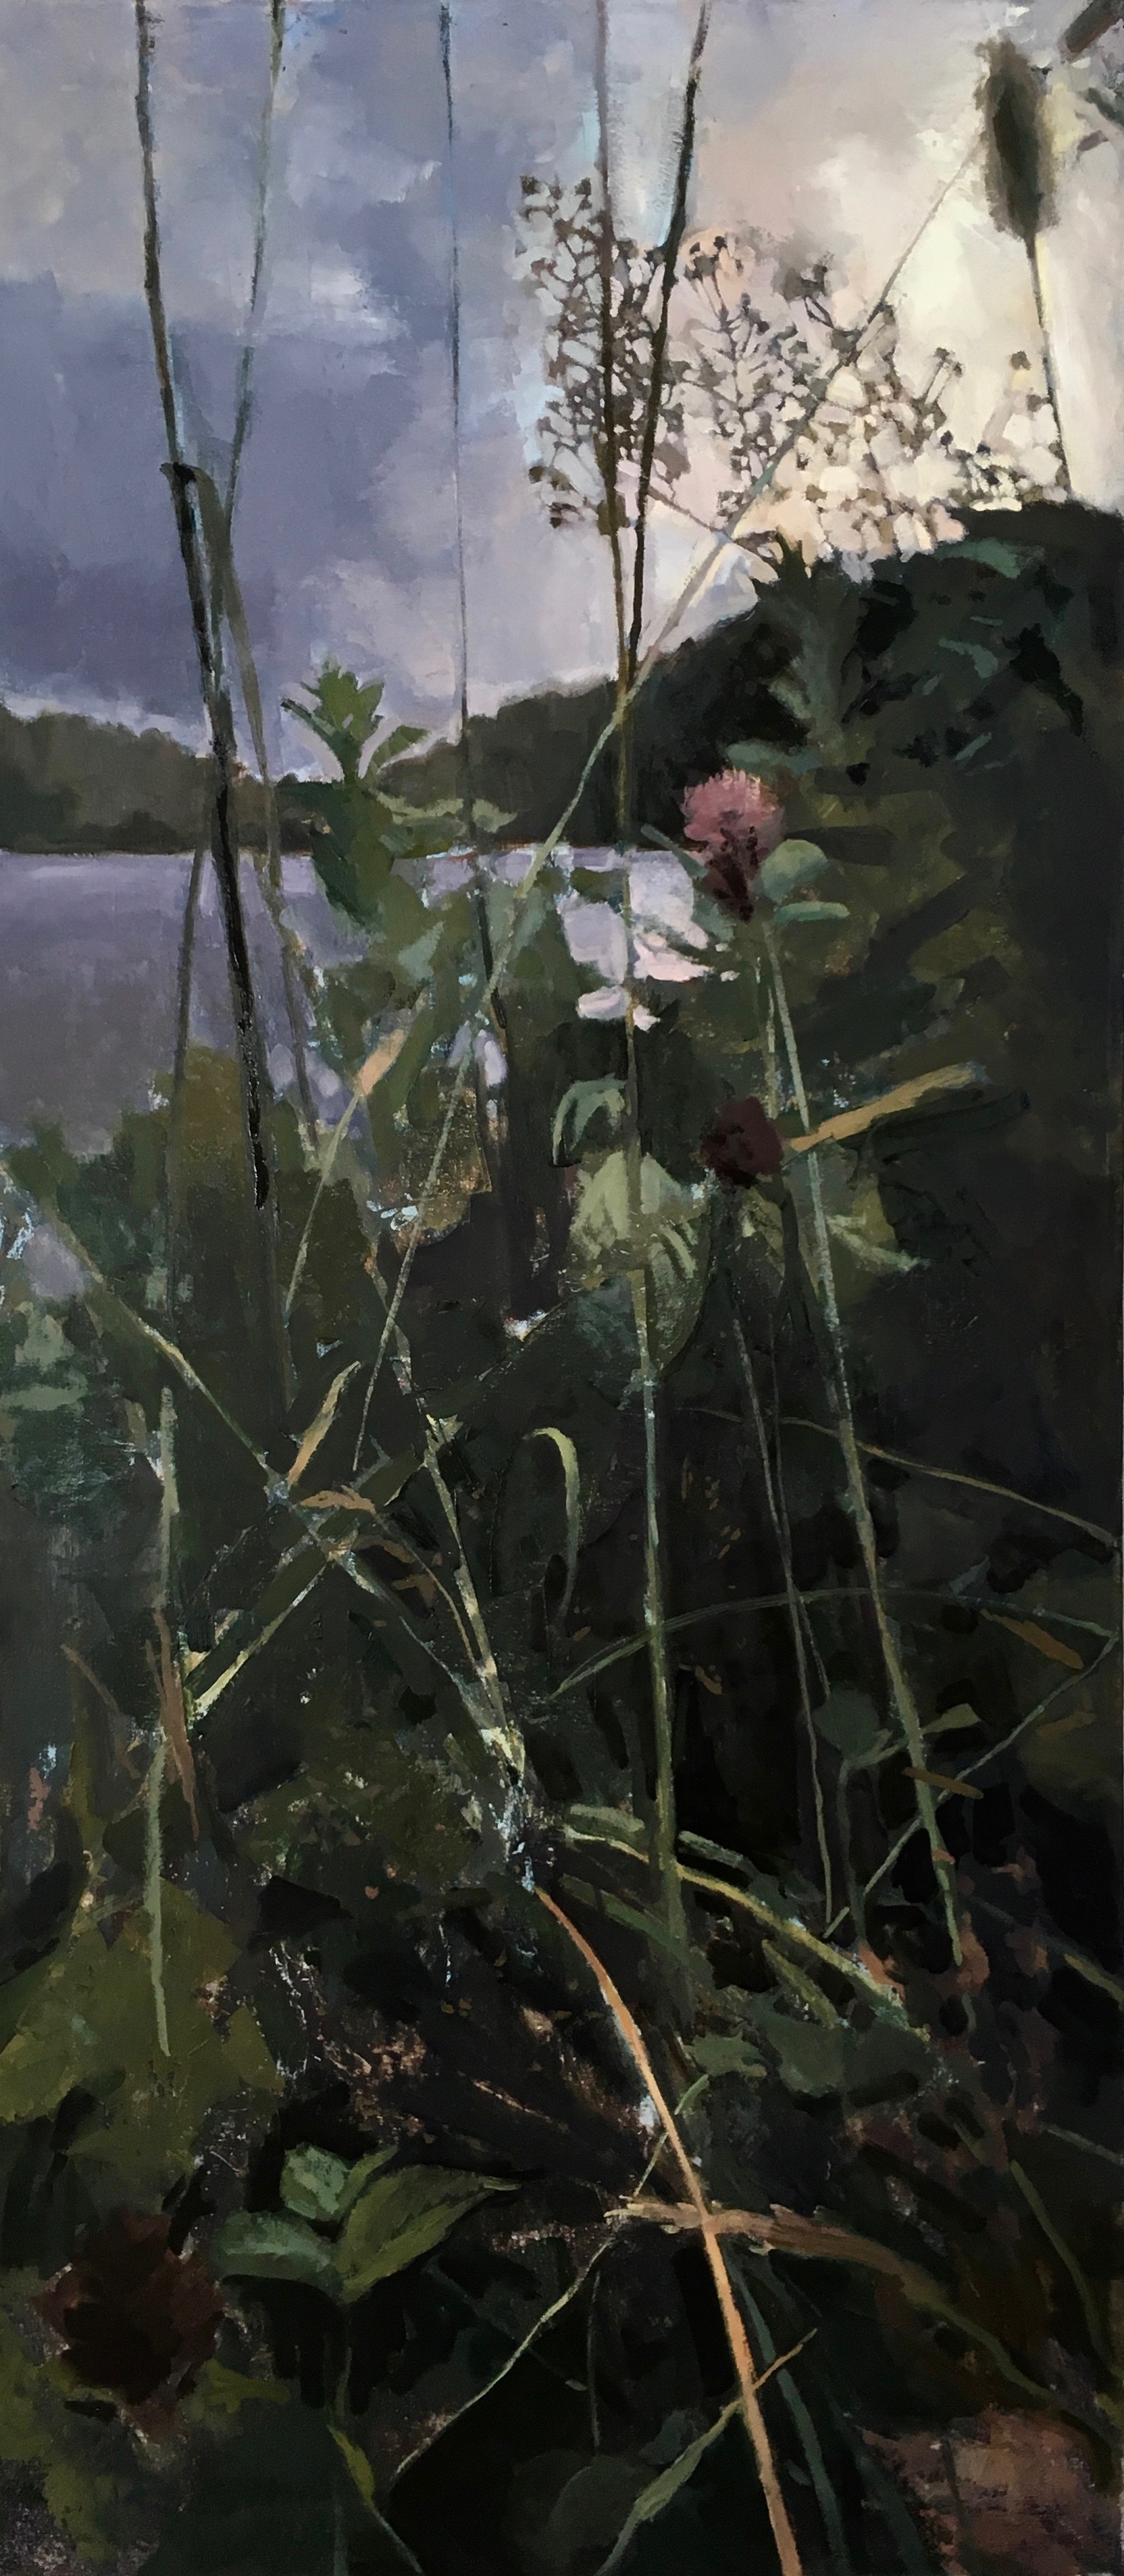 Passage, oil on canvas, 45"x20", 2017